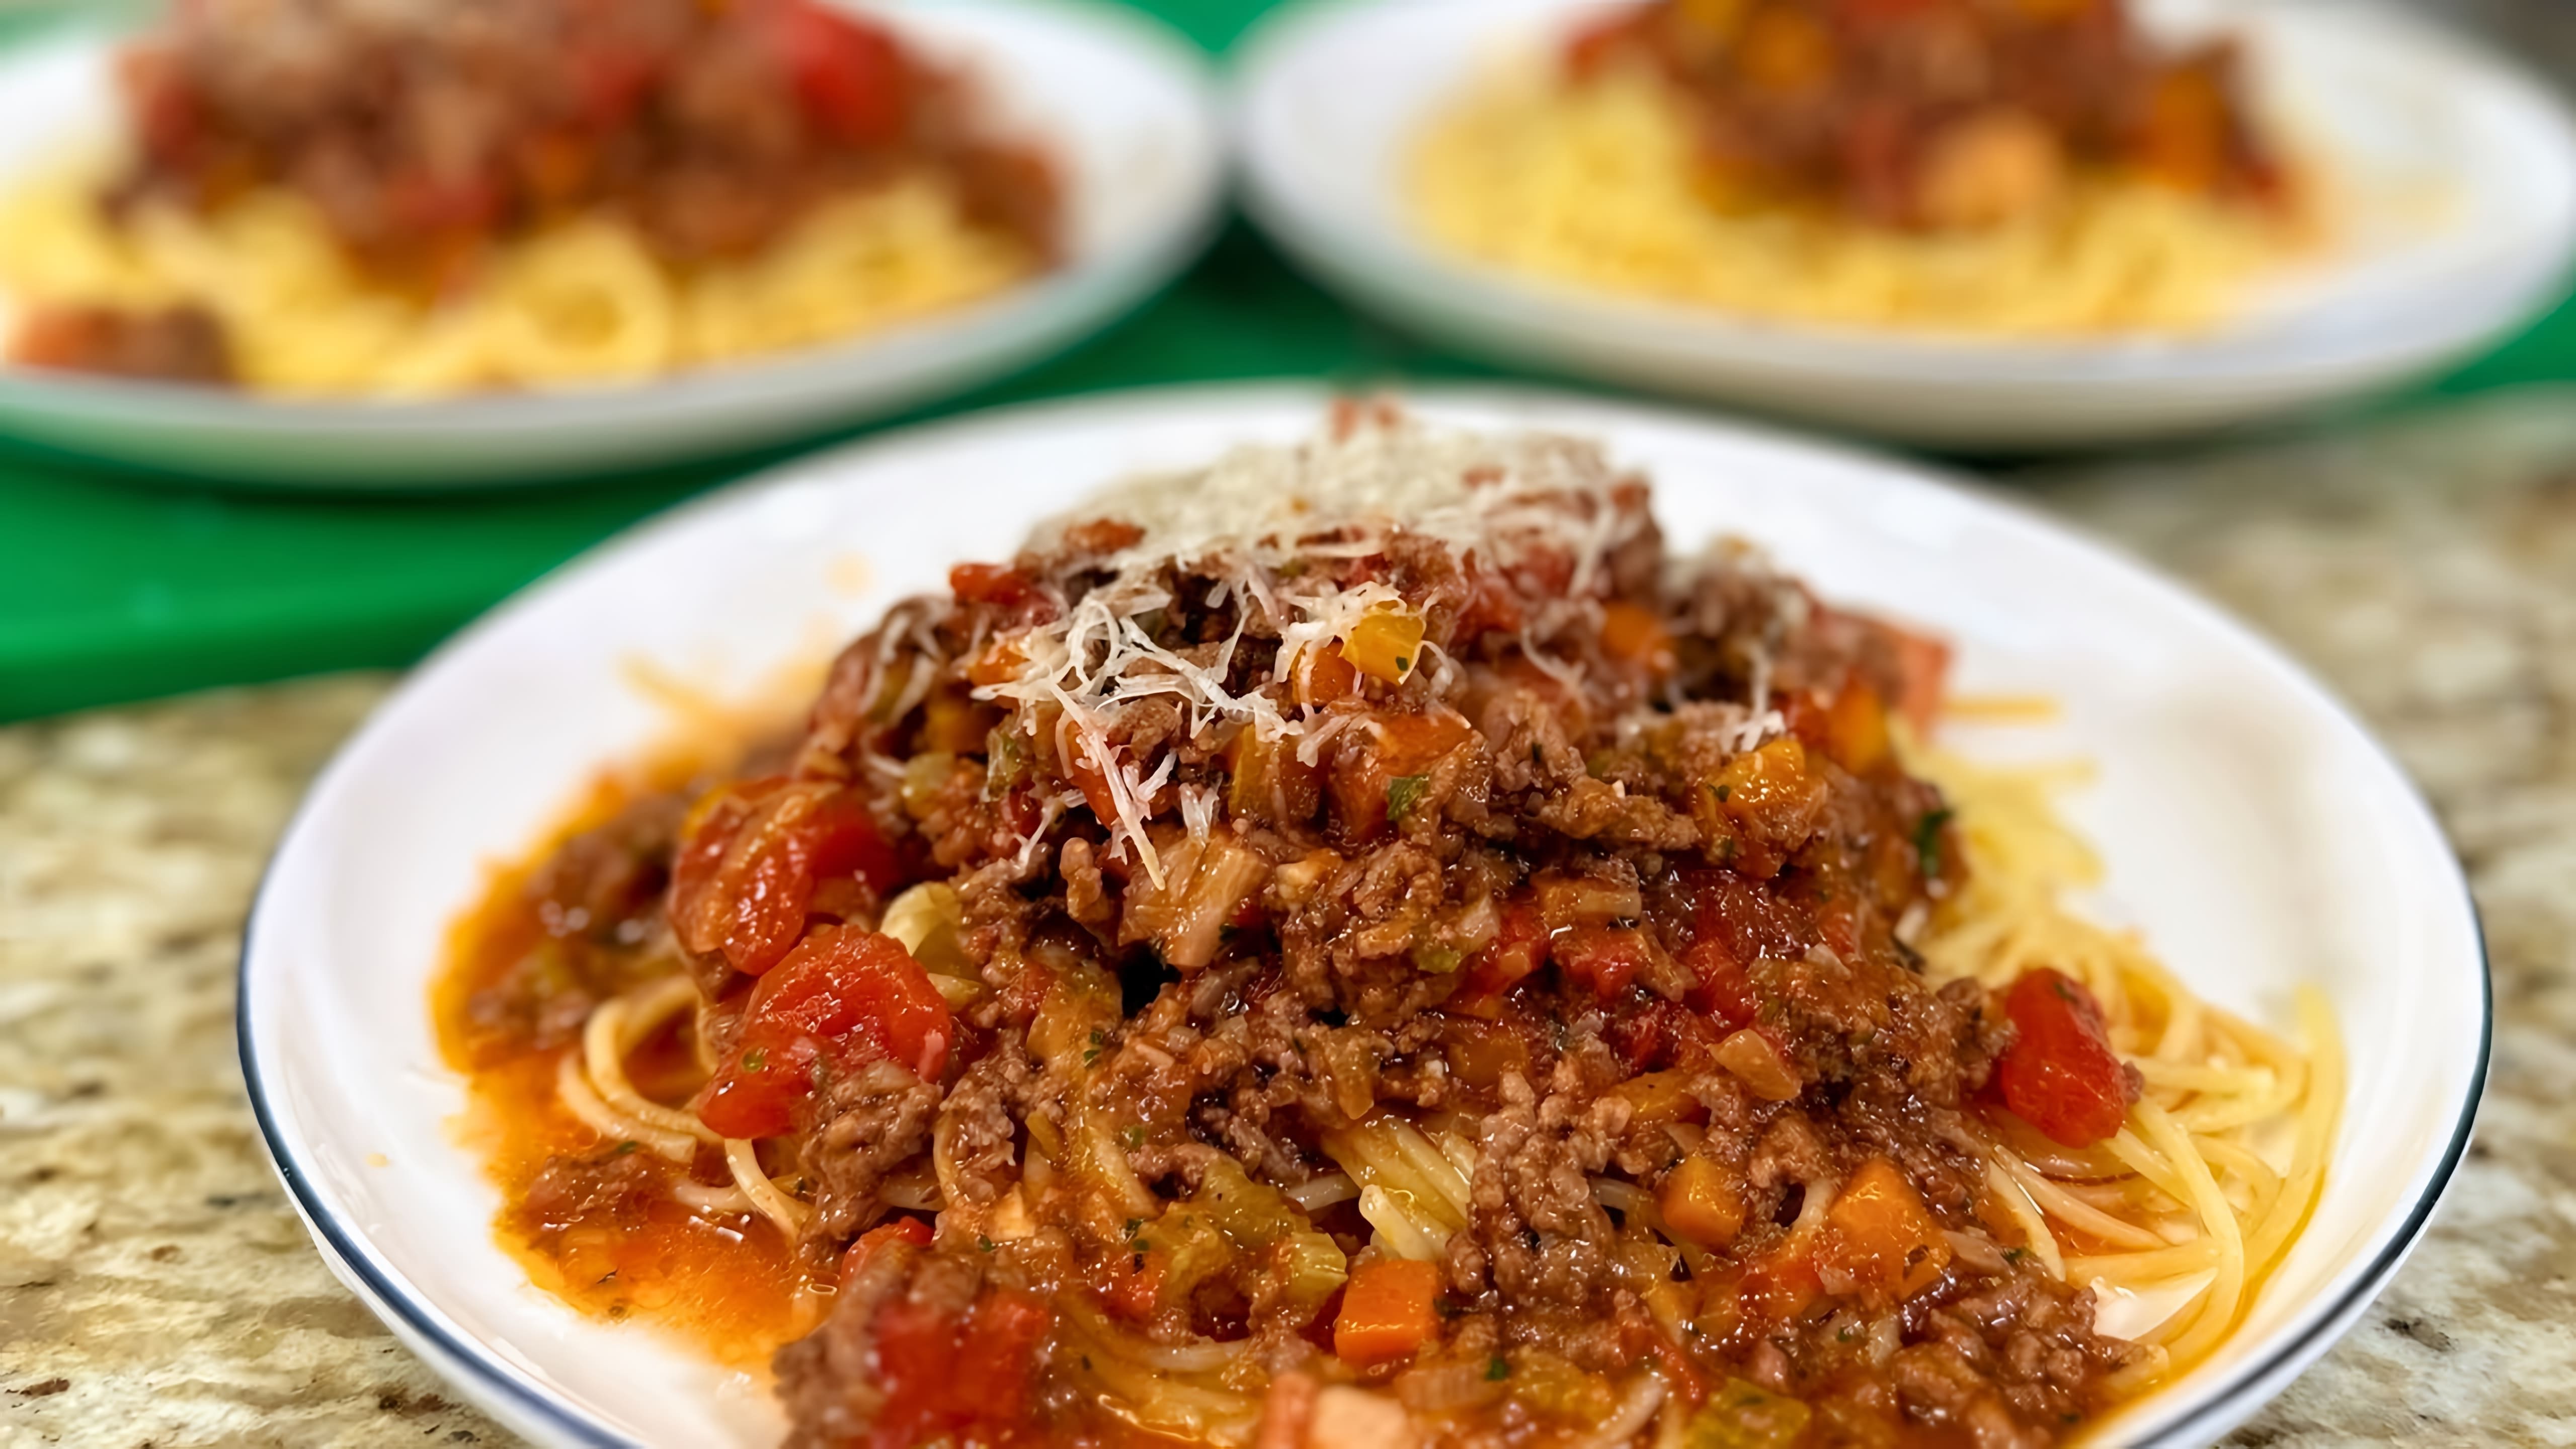 В этом видео демонстрируется рецепт приготовления вкусного и сытного блюда - спагетти болоньезе